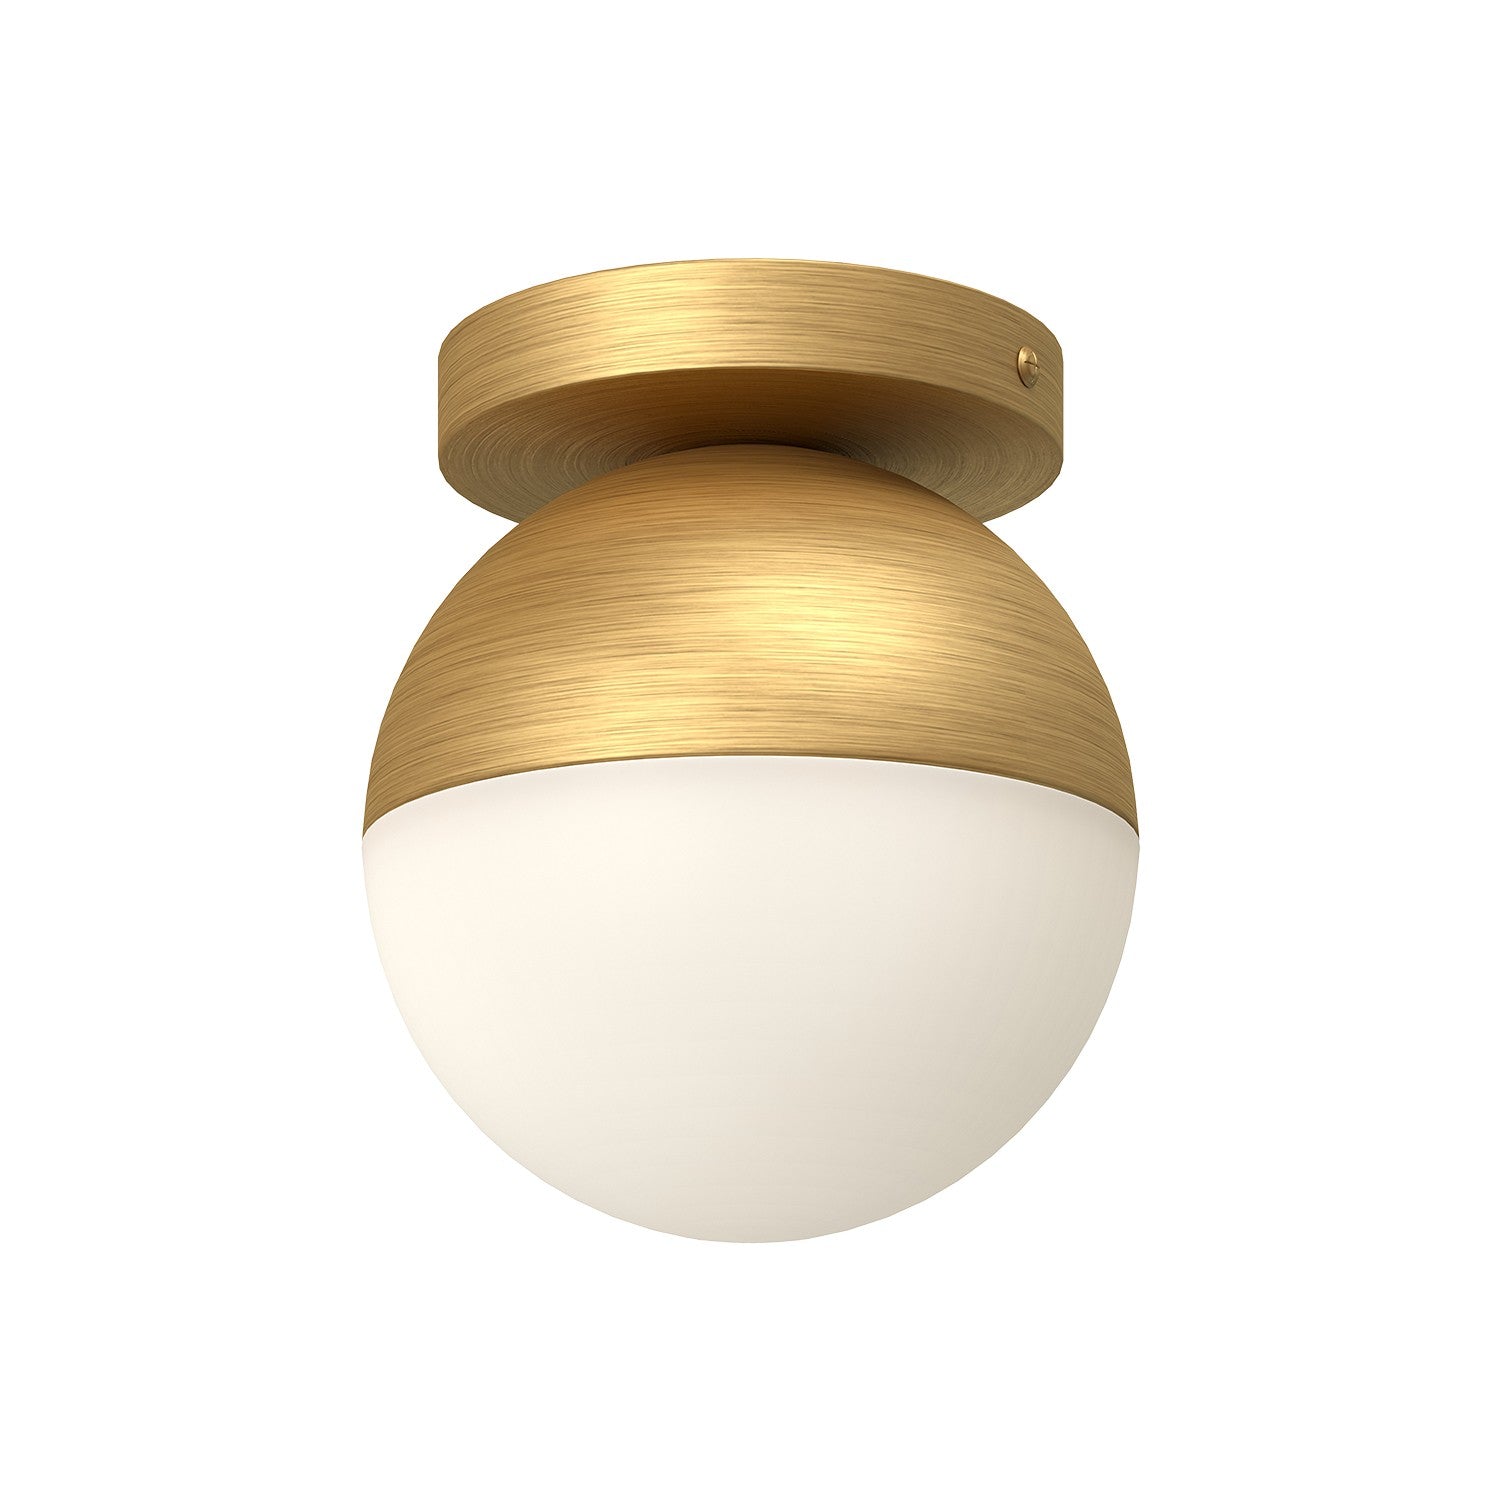 Kuzco Lighting FM58306-BG/OP Monae Ceiling Light Brushed Gold/Opal Glass